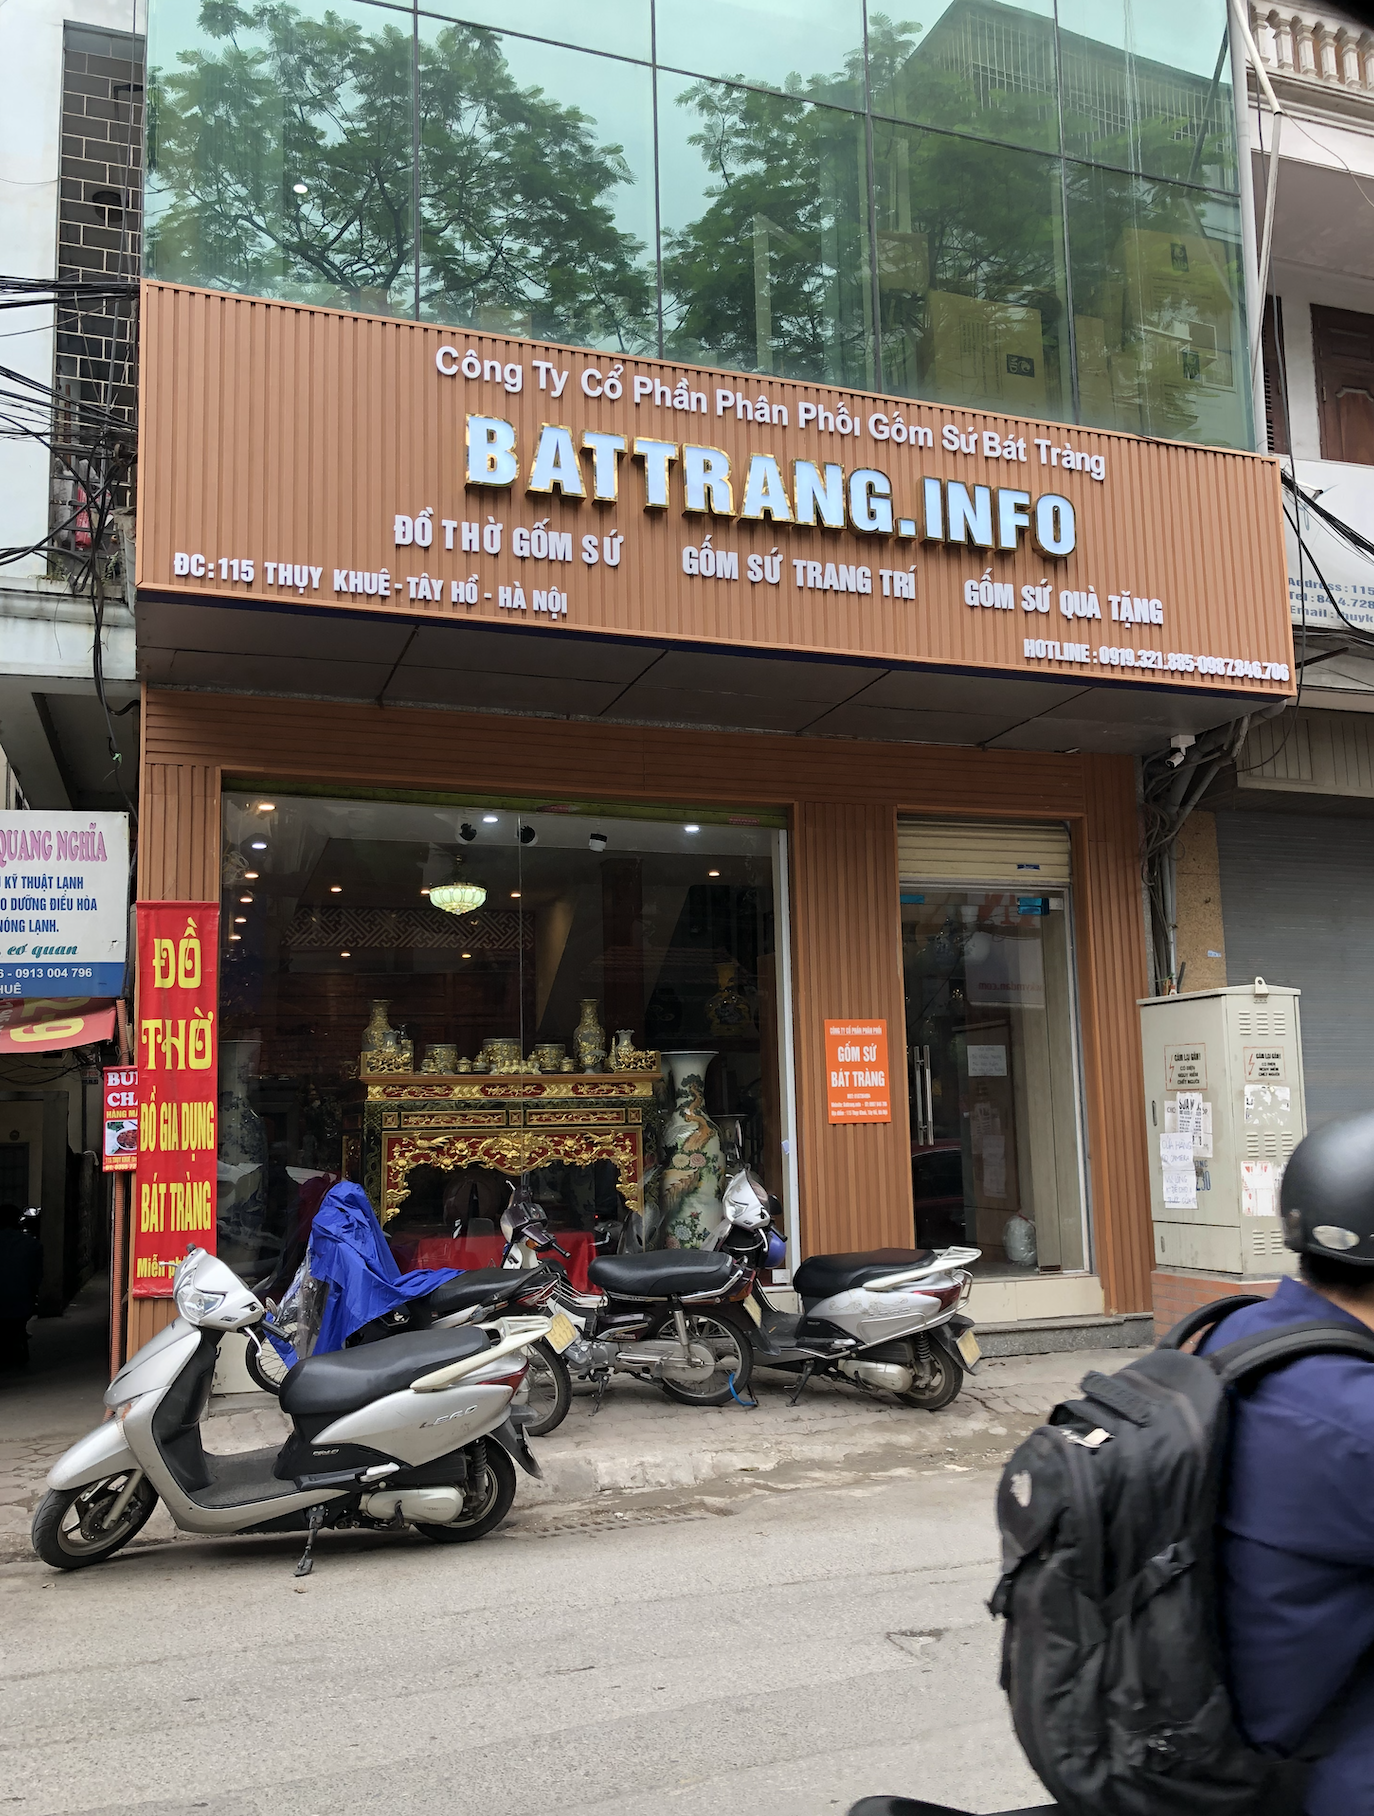 Cửa hàng bán đồ thờ gốm sứ Bát Tràng cao cấp tại 115 Thụy Khuê, Tây Hồ, Hà Nội